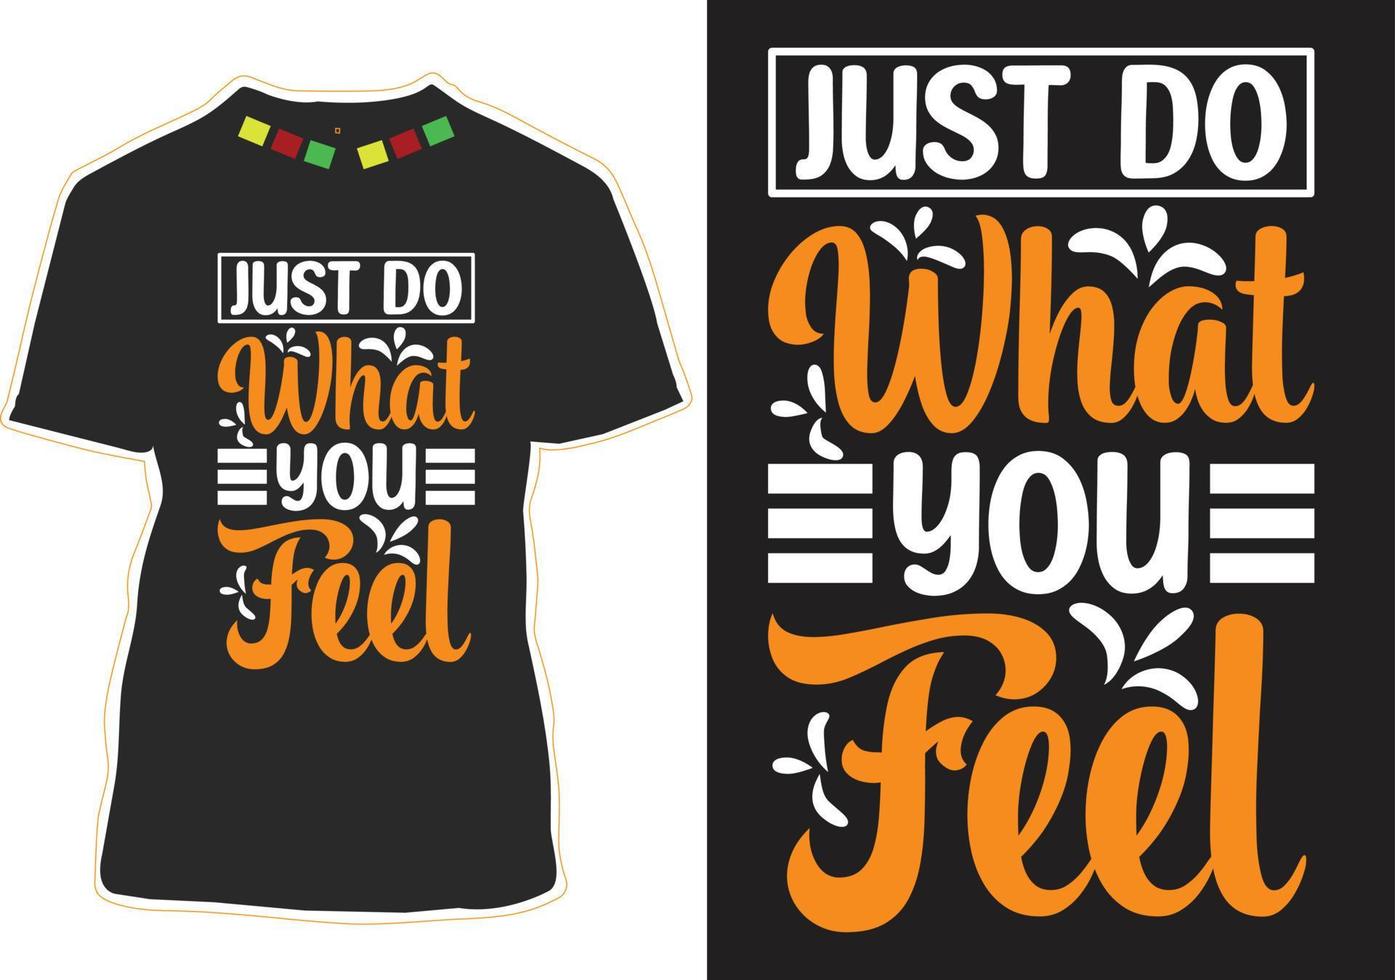 faites juste ce que vous ressentez conception de t-shirt de citations de motivation vecteur